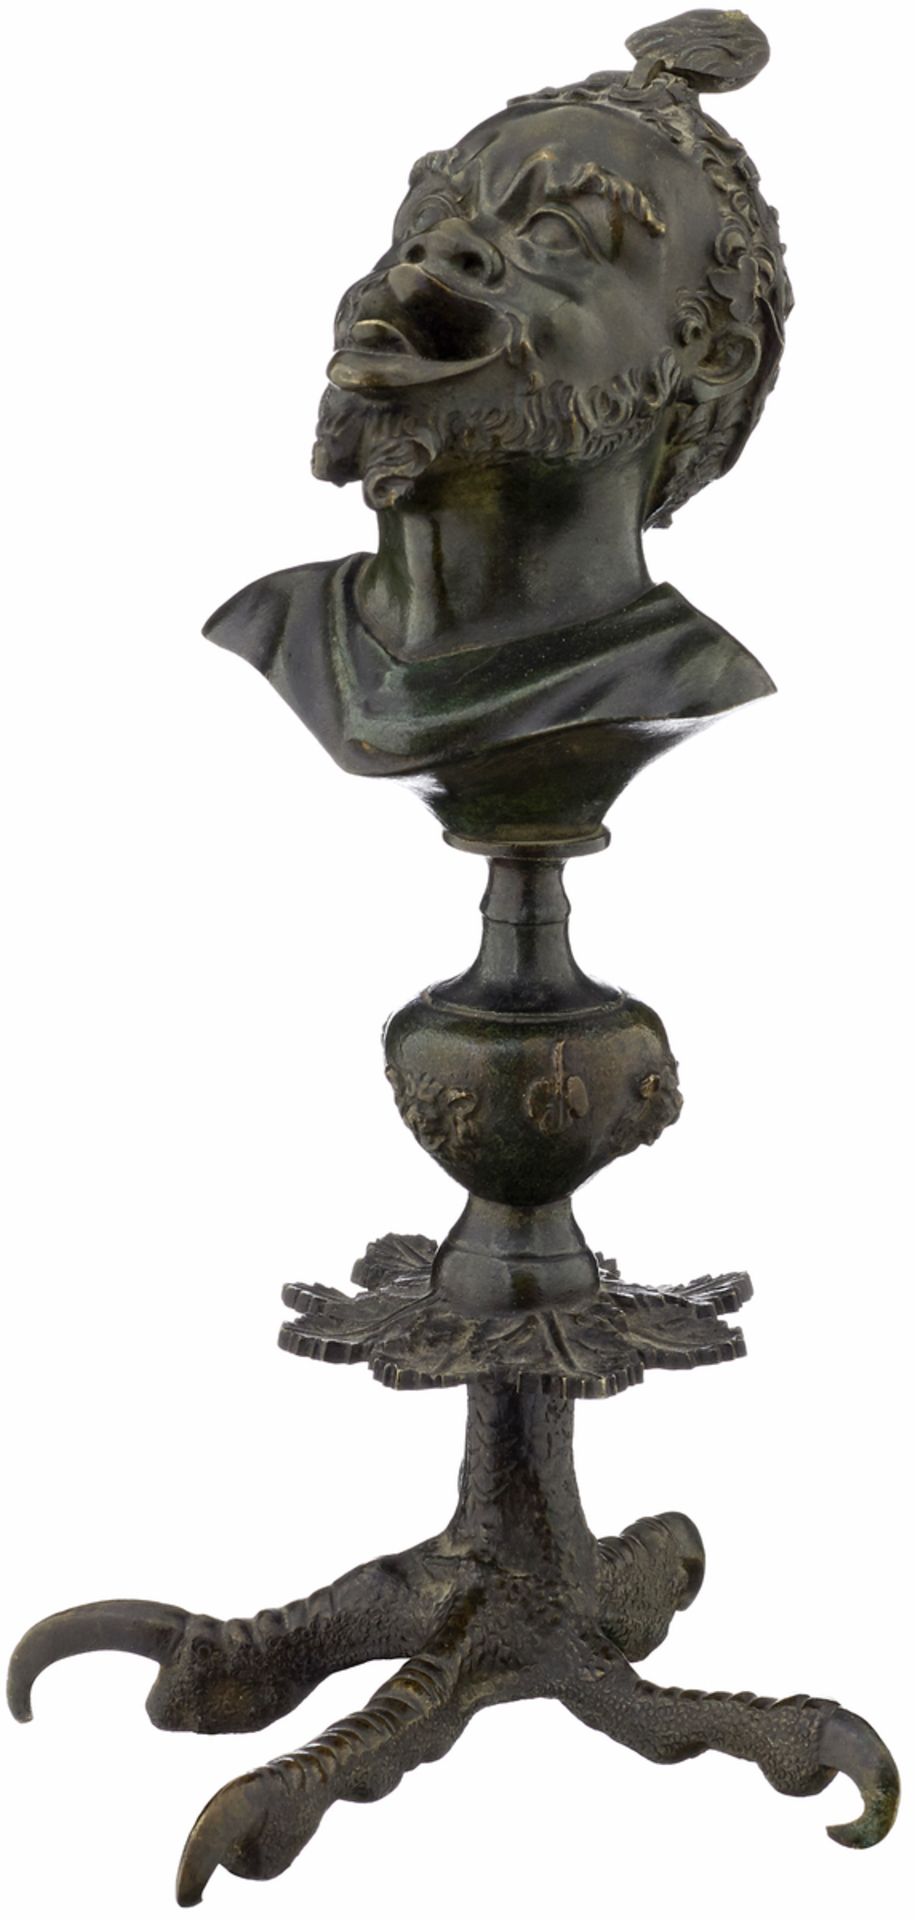 Oellampe "Mohr"Italien, um 1900. Bronze ziseliert und dunkel patiniert. Höhe 23 cm- - -20.00 %